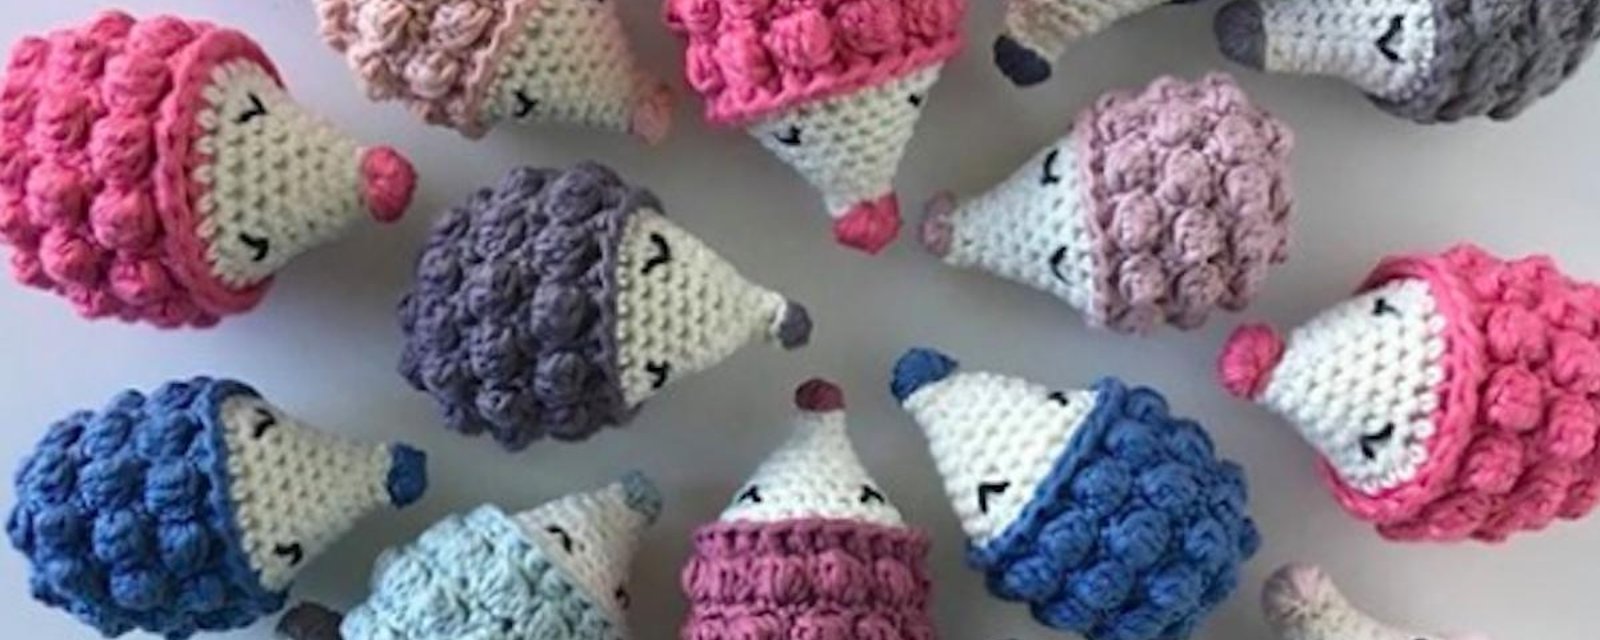 Projet tricot: de mignons petits hérissons